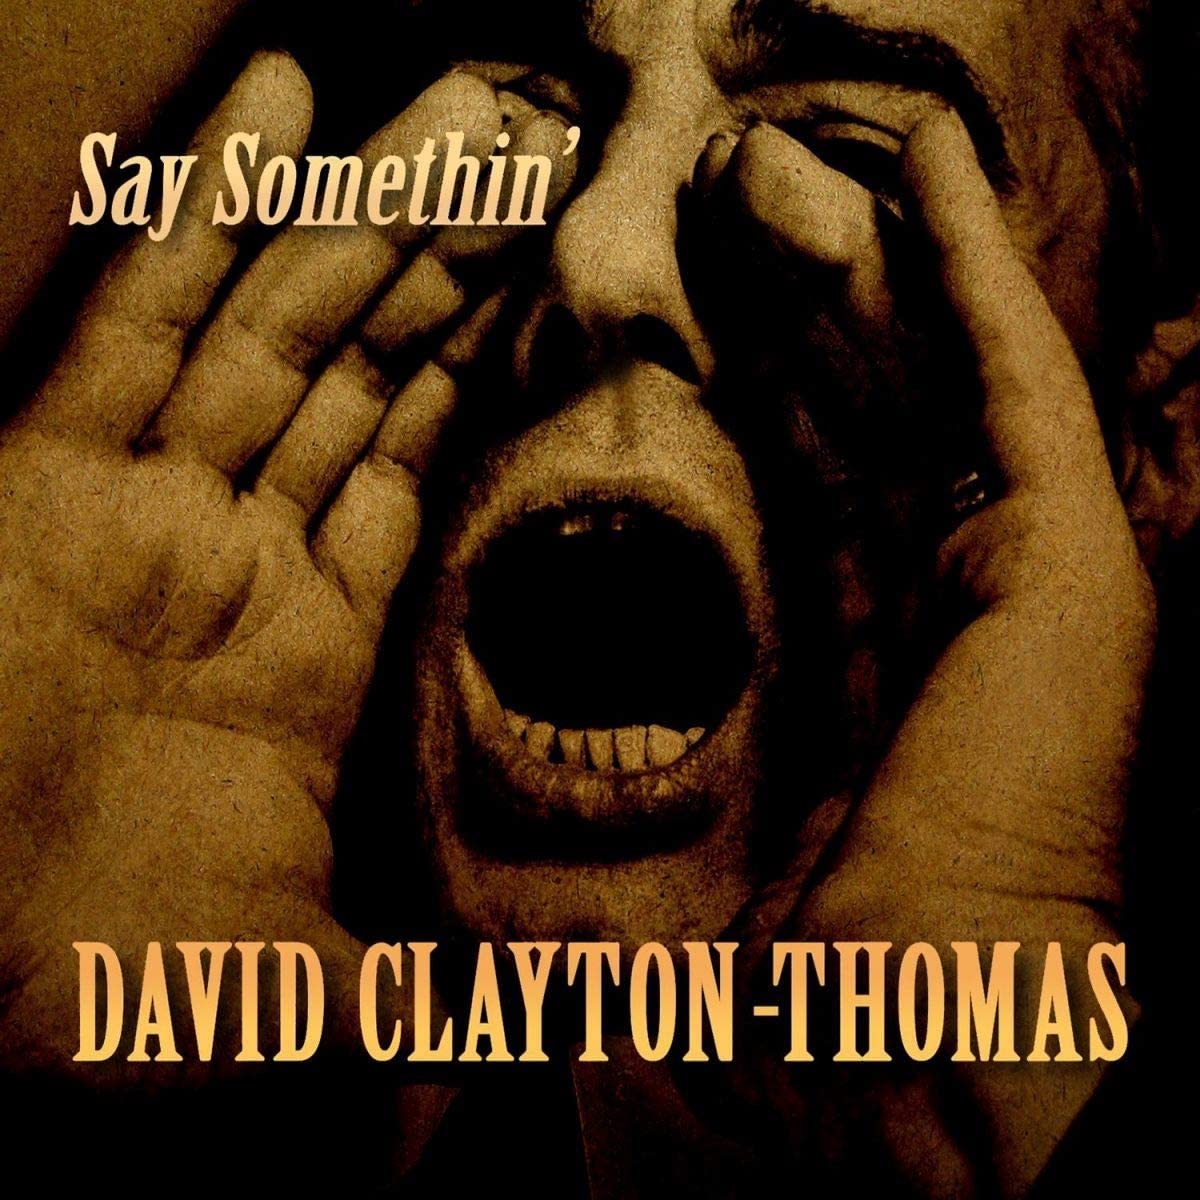 David Clayton-Thomas - Say Somethin' - CD